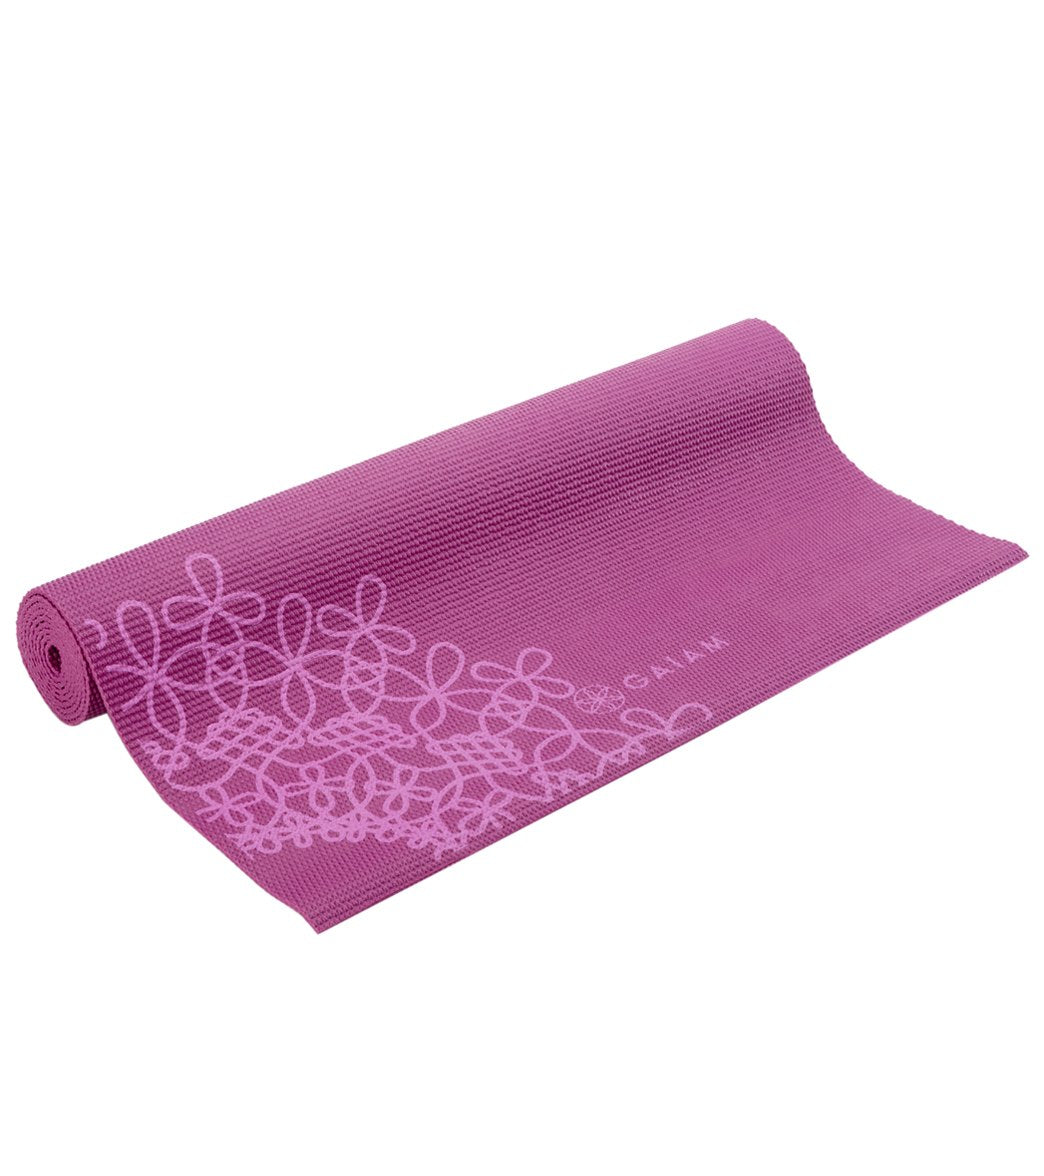 Buy Gaiam Printed Yoga Mat 3 mm Purple Medallion at